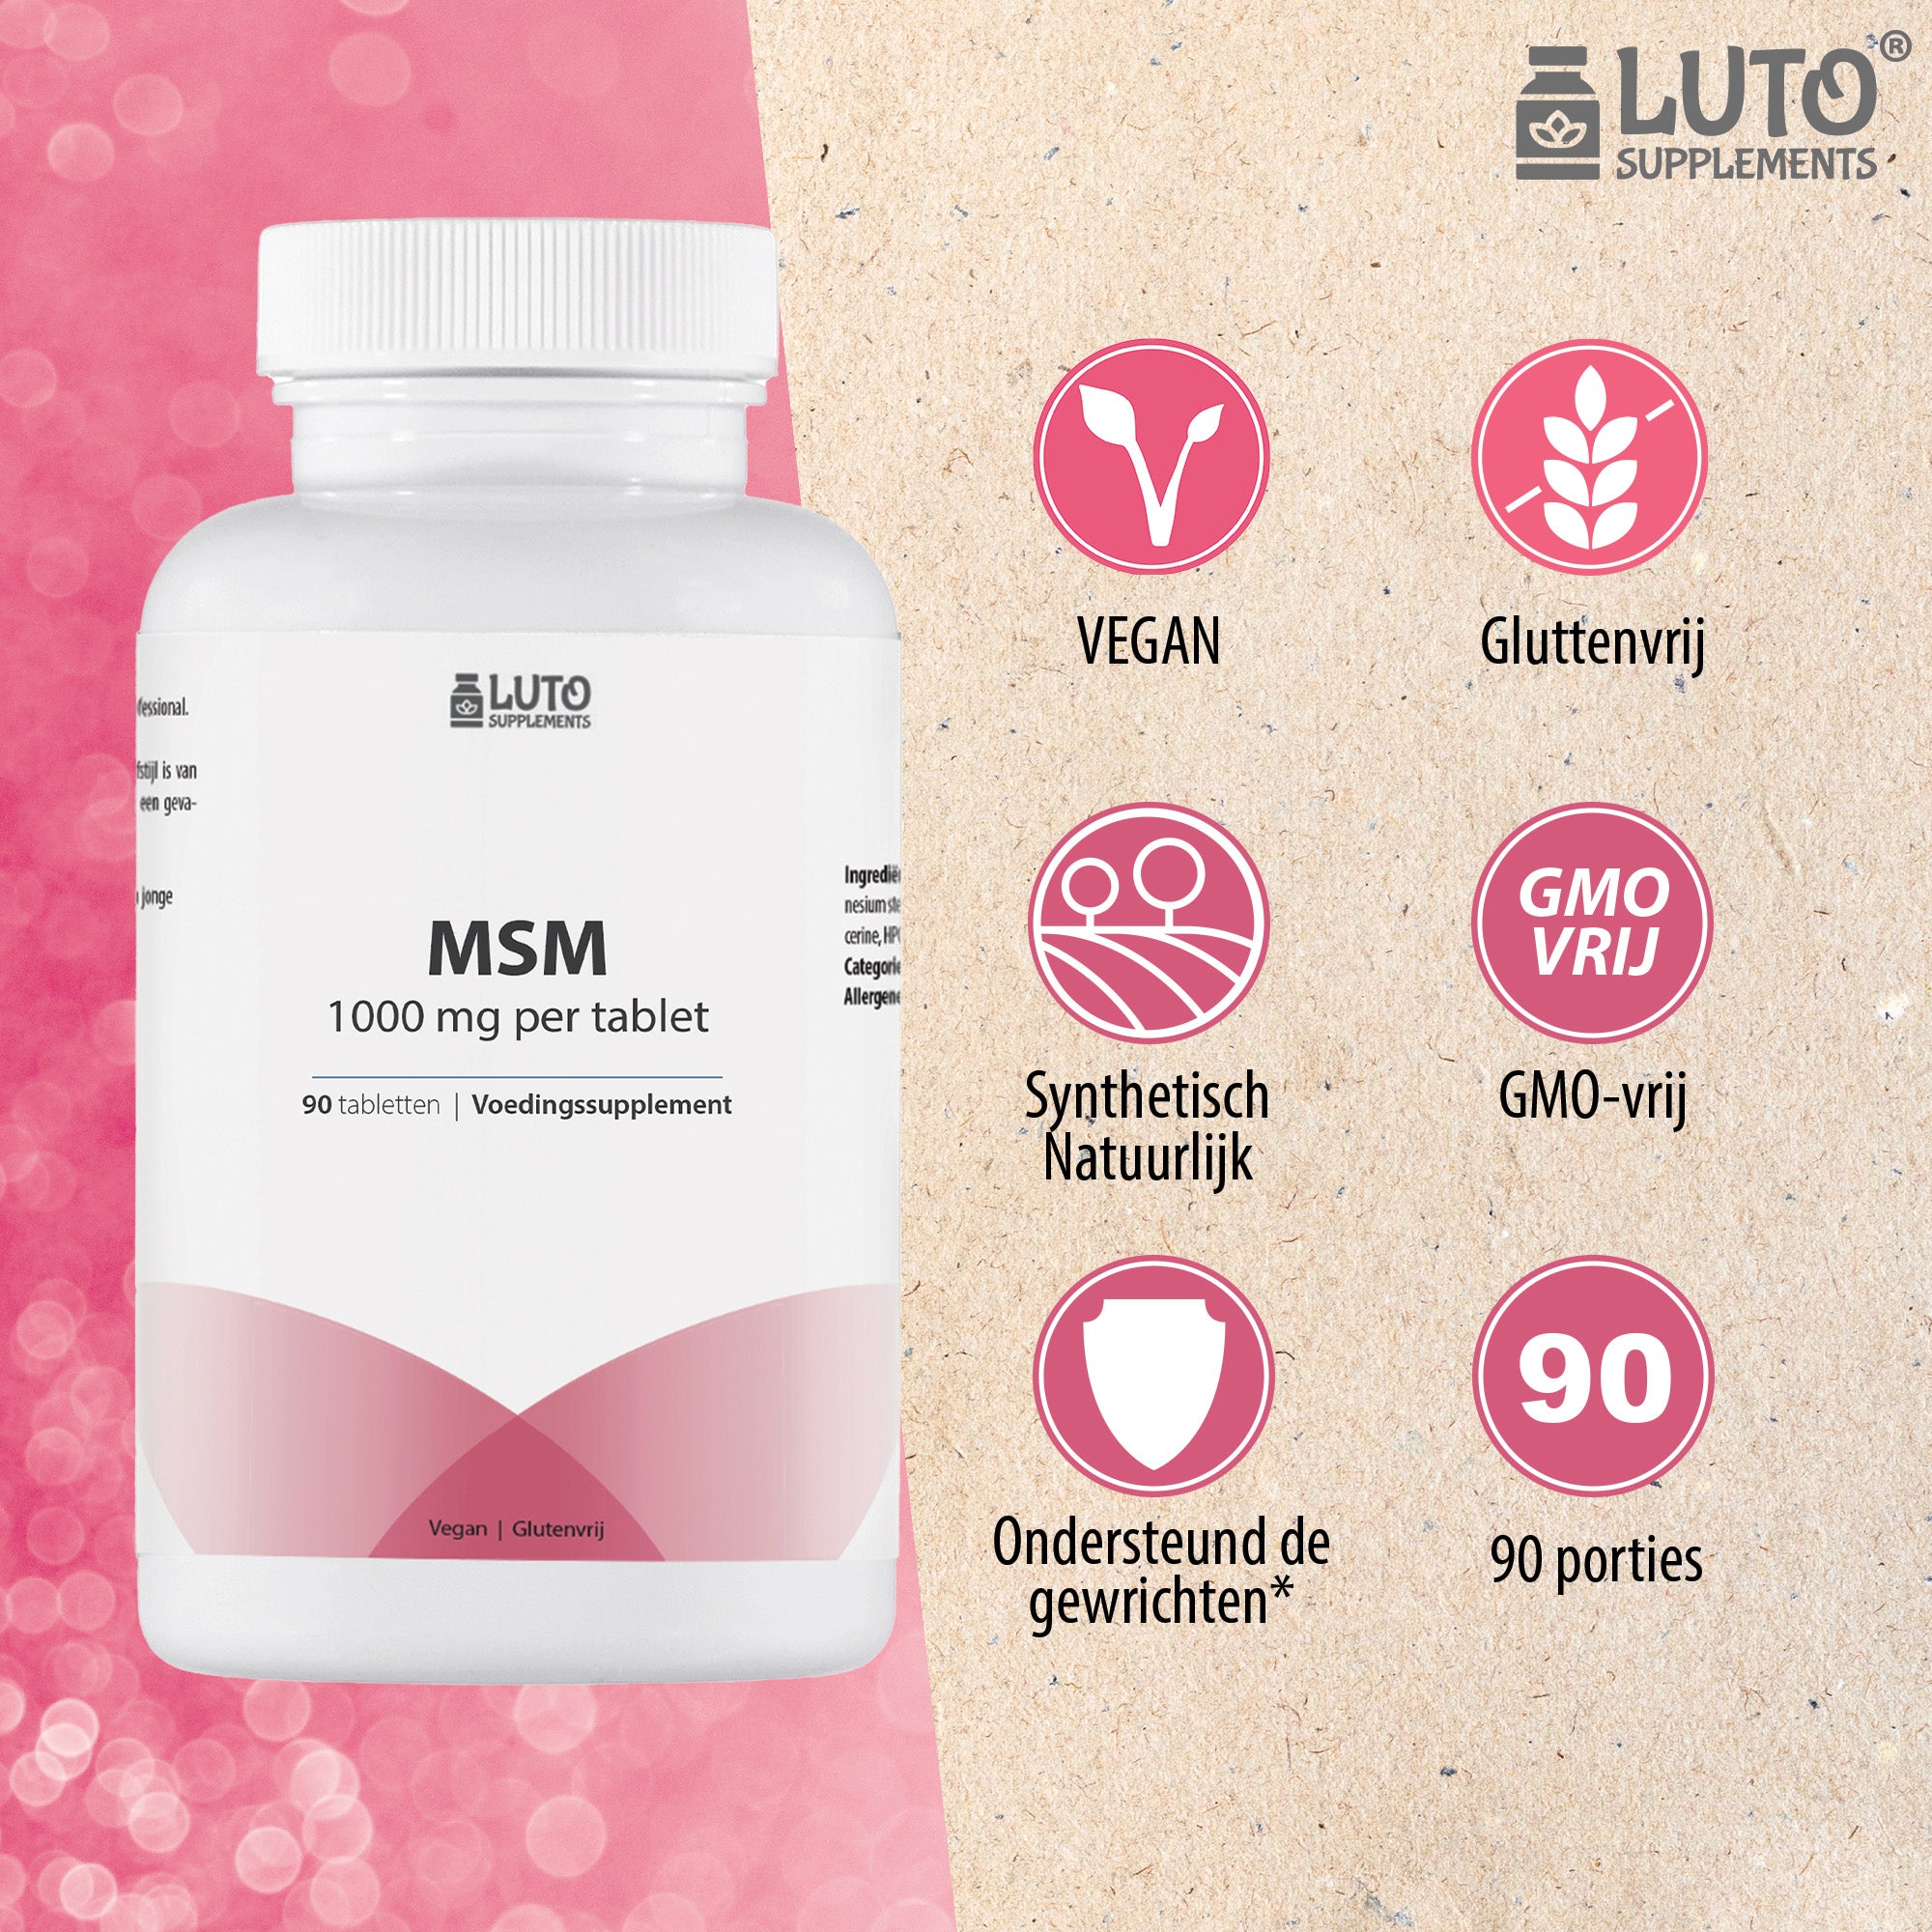 MSM 1000 mg - Methyl Sulfonyl Methaan - Botten & Gewrichten* - 90 tabletten - zonder toevoegingen - 3 maanden voorraad - Natuurlijke vorm organisch zwavel - veganistisch - Luto Supplements